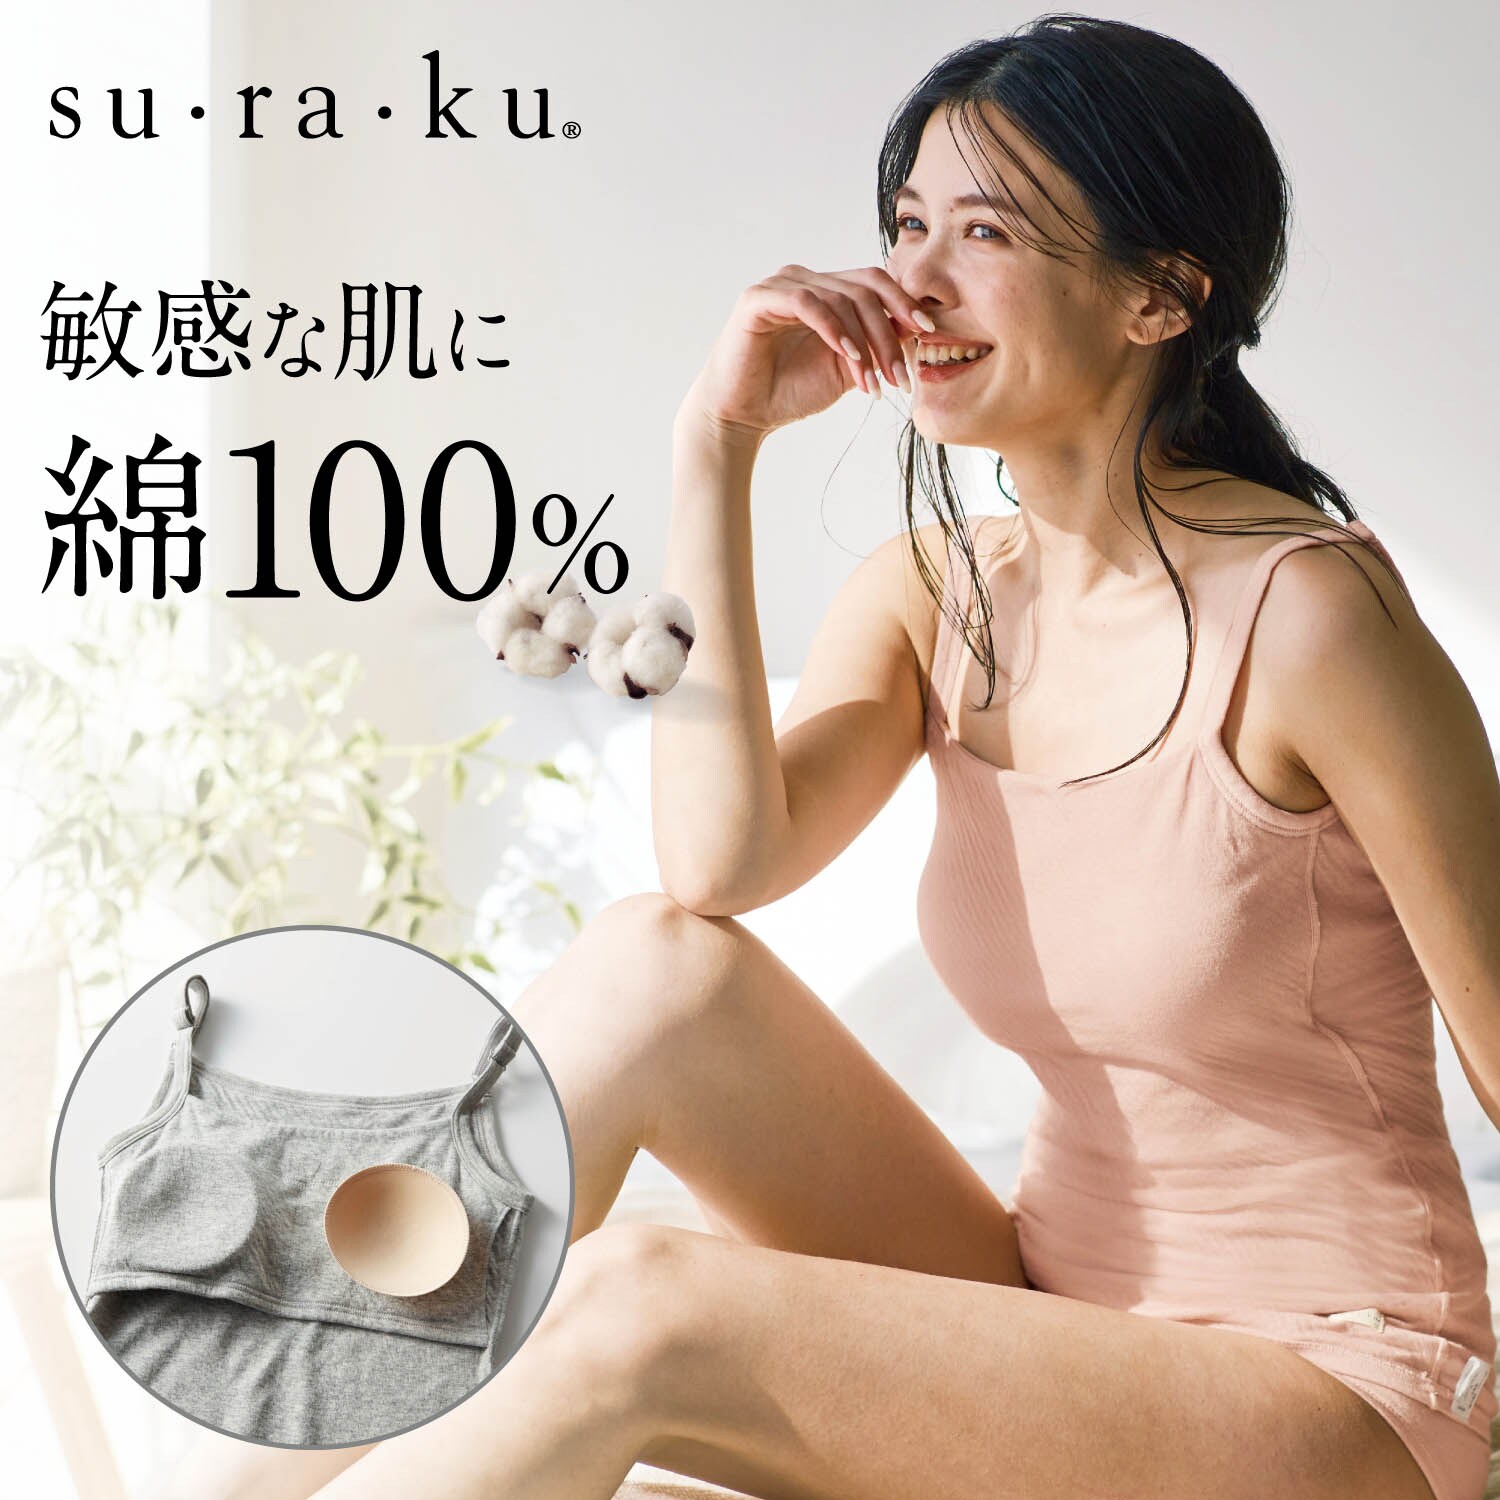 【スラク su・ra・ku】【5月8日までまとめ買いでお得】 敏感肌さんのためのやわらか綿カップ付きキャミ